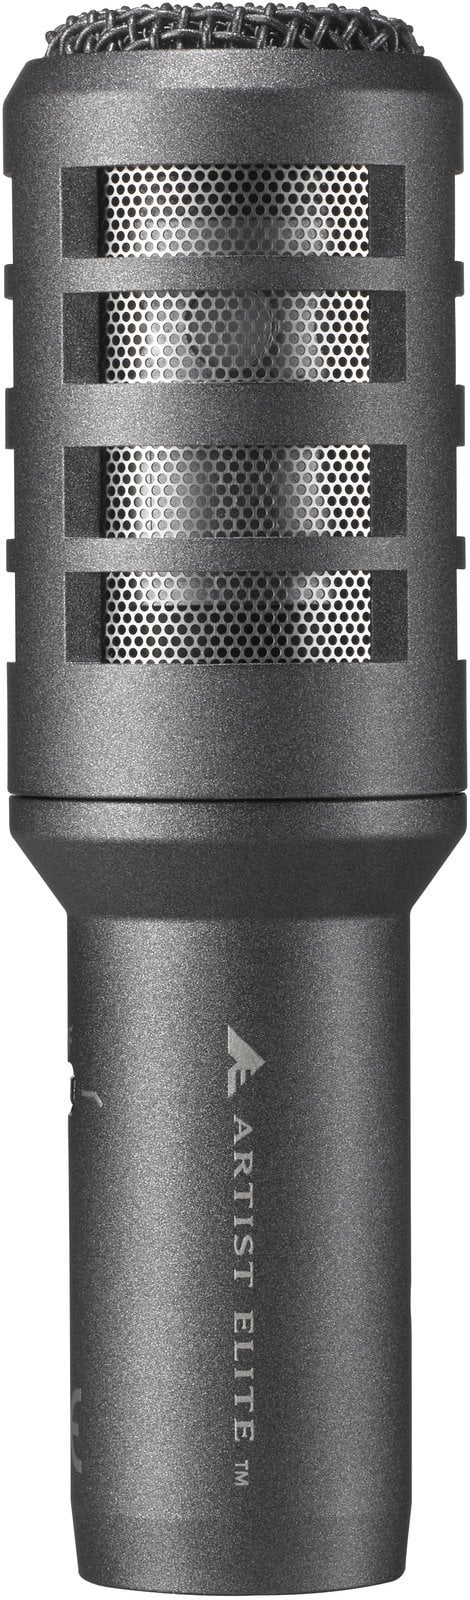 Mikrofon dynamiczny instrumentalny Audio-Technica AE2300 Mikrofon dynamiczny instrumentalny